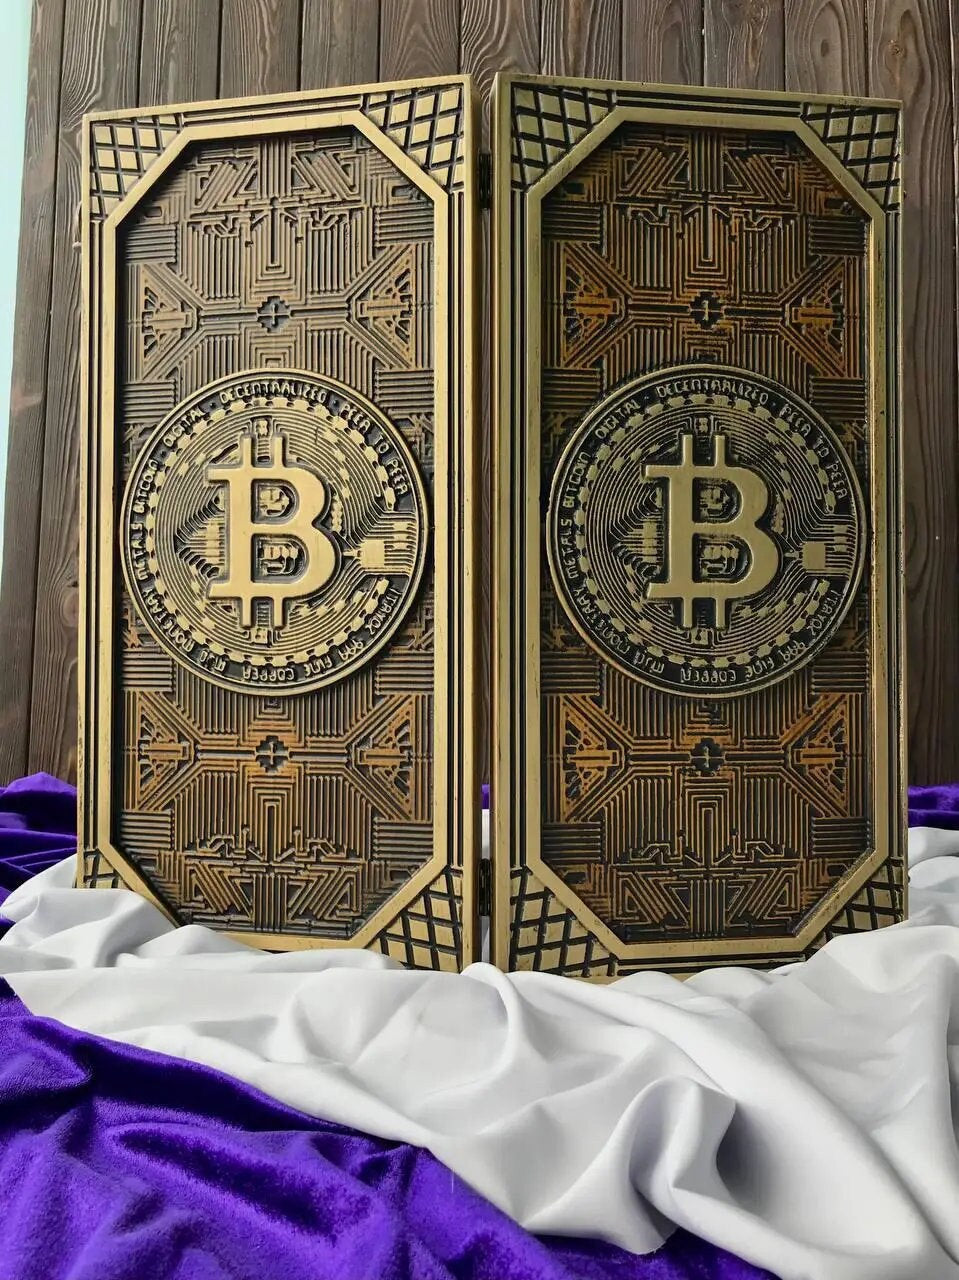 Bitcoin Backgammon set, Bitcoin board, Backgammon board, backgammon set wood, gift for men, custom backgammon board, gift for father